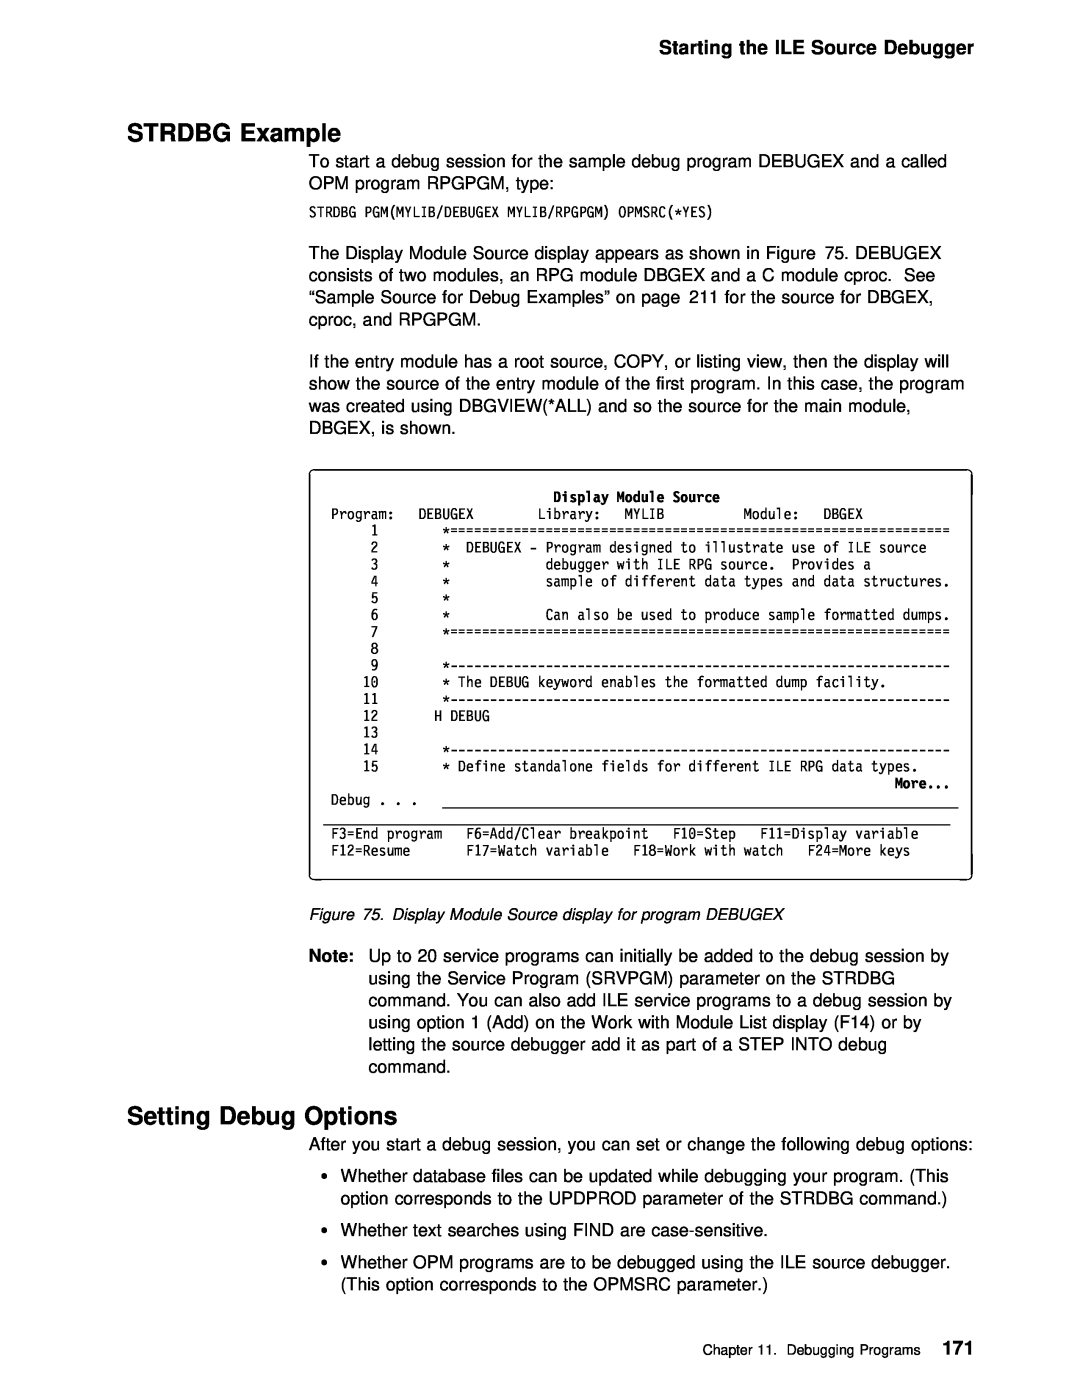 IBM AS/400 manual STRDBG Example, Setting Debug Options, Starting the ILE Source Debugger 